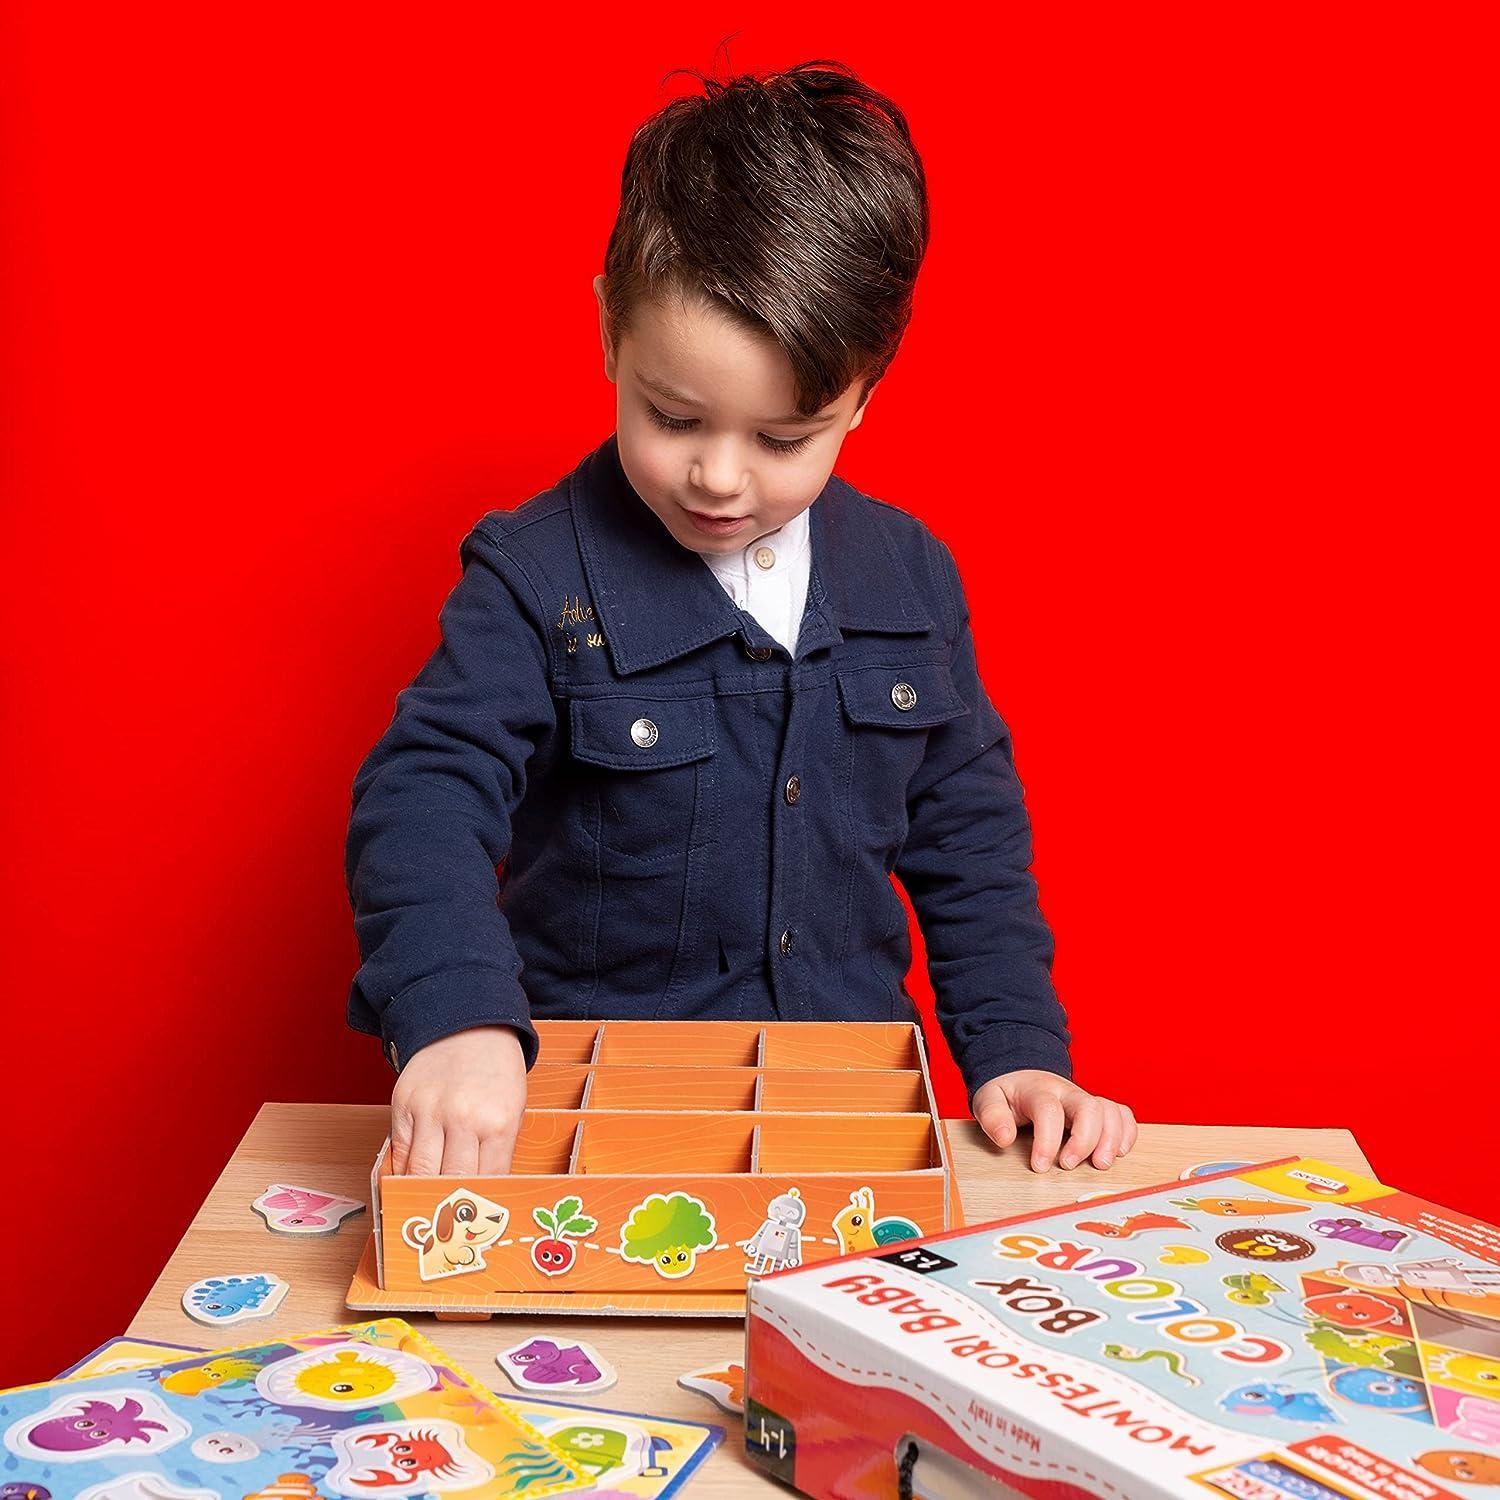 liscianigiochi montessori baby color box